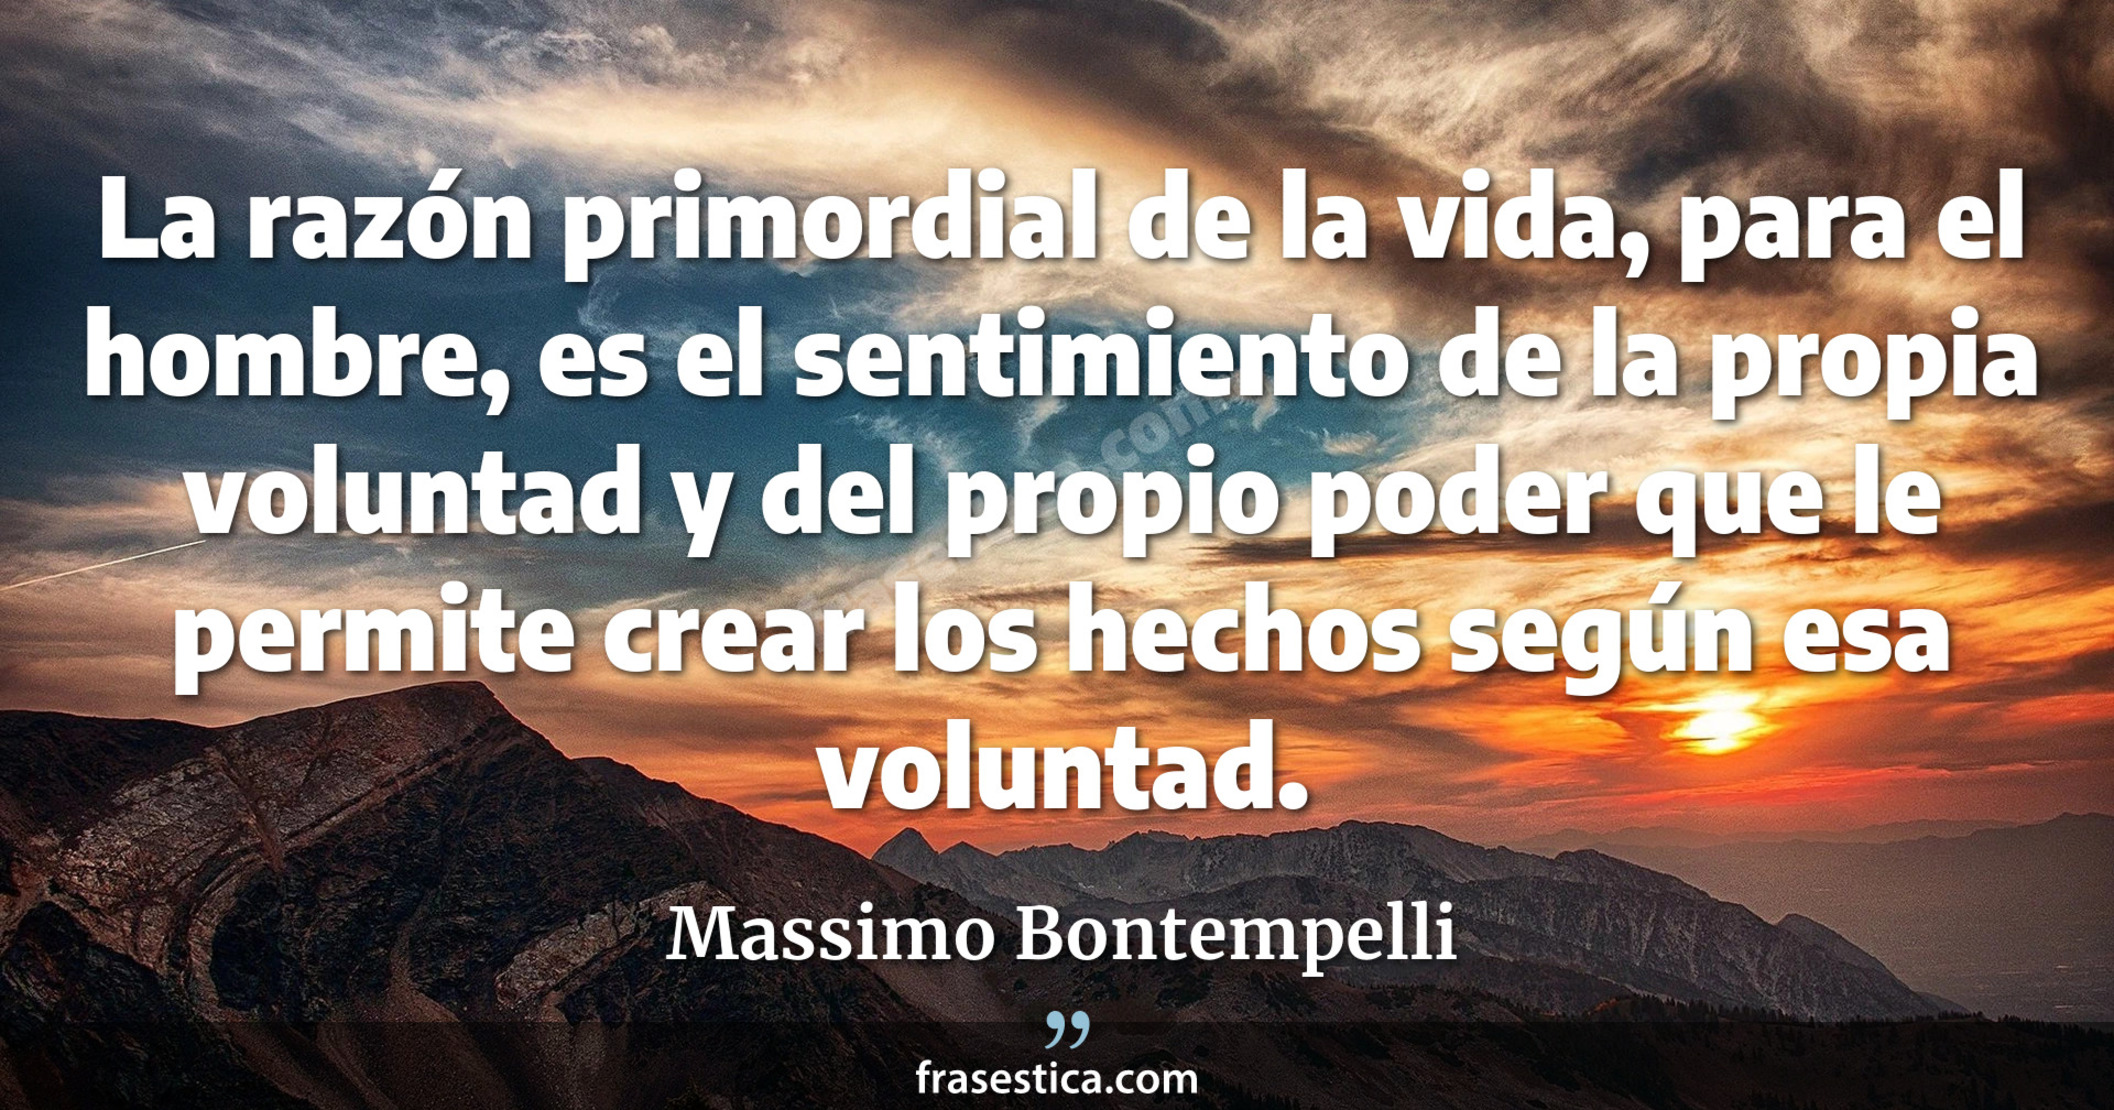 La razón primordial de la vida, para el hombre, es el sentimiento de la propia voluntad y del propio poder que le permite crear los hechos según esa voluntad. - Massimo Bontempelli